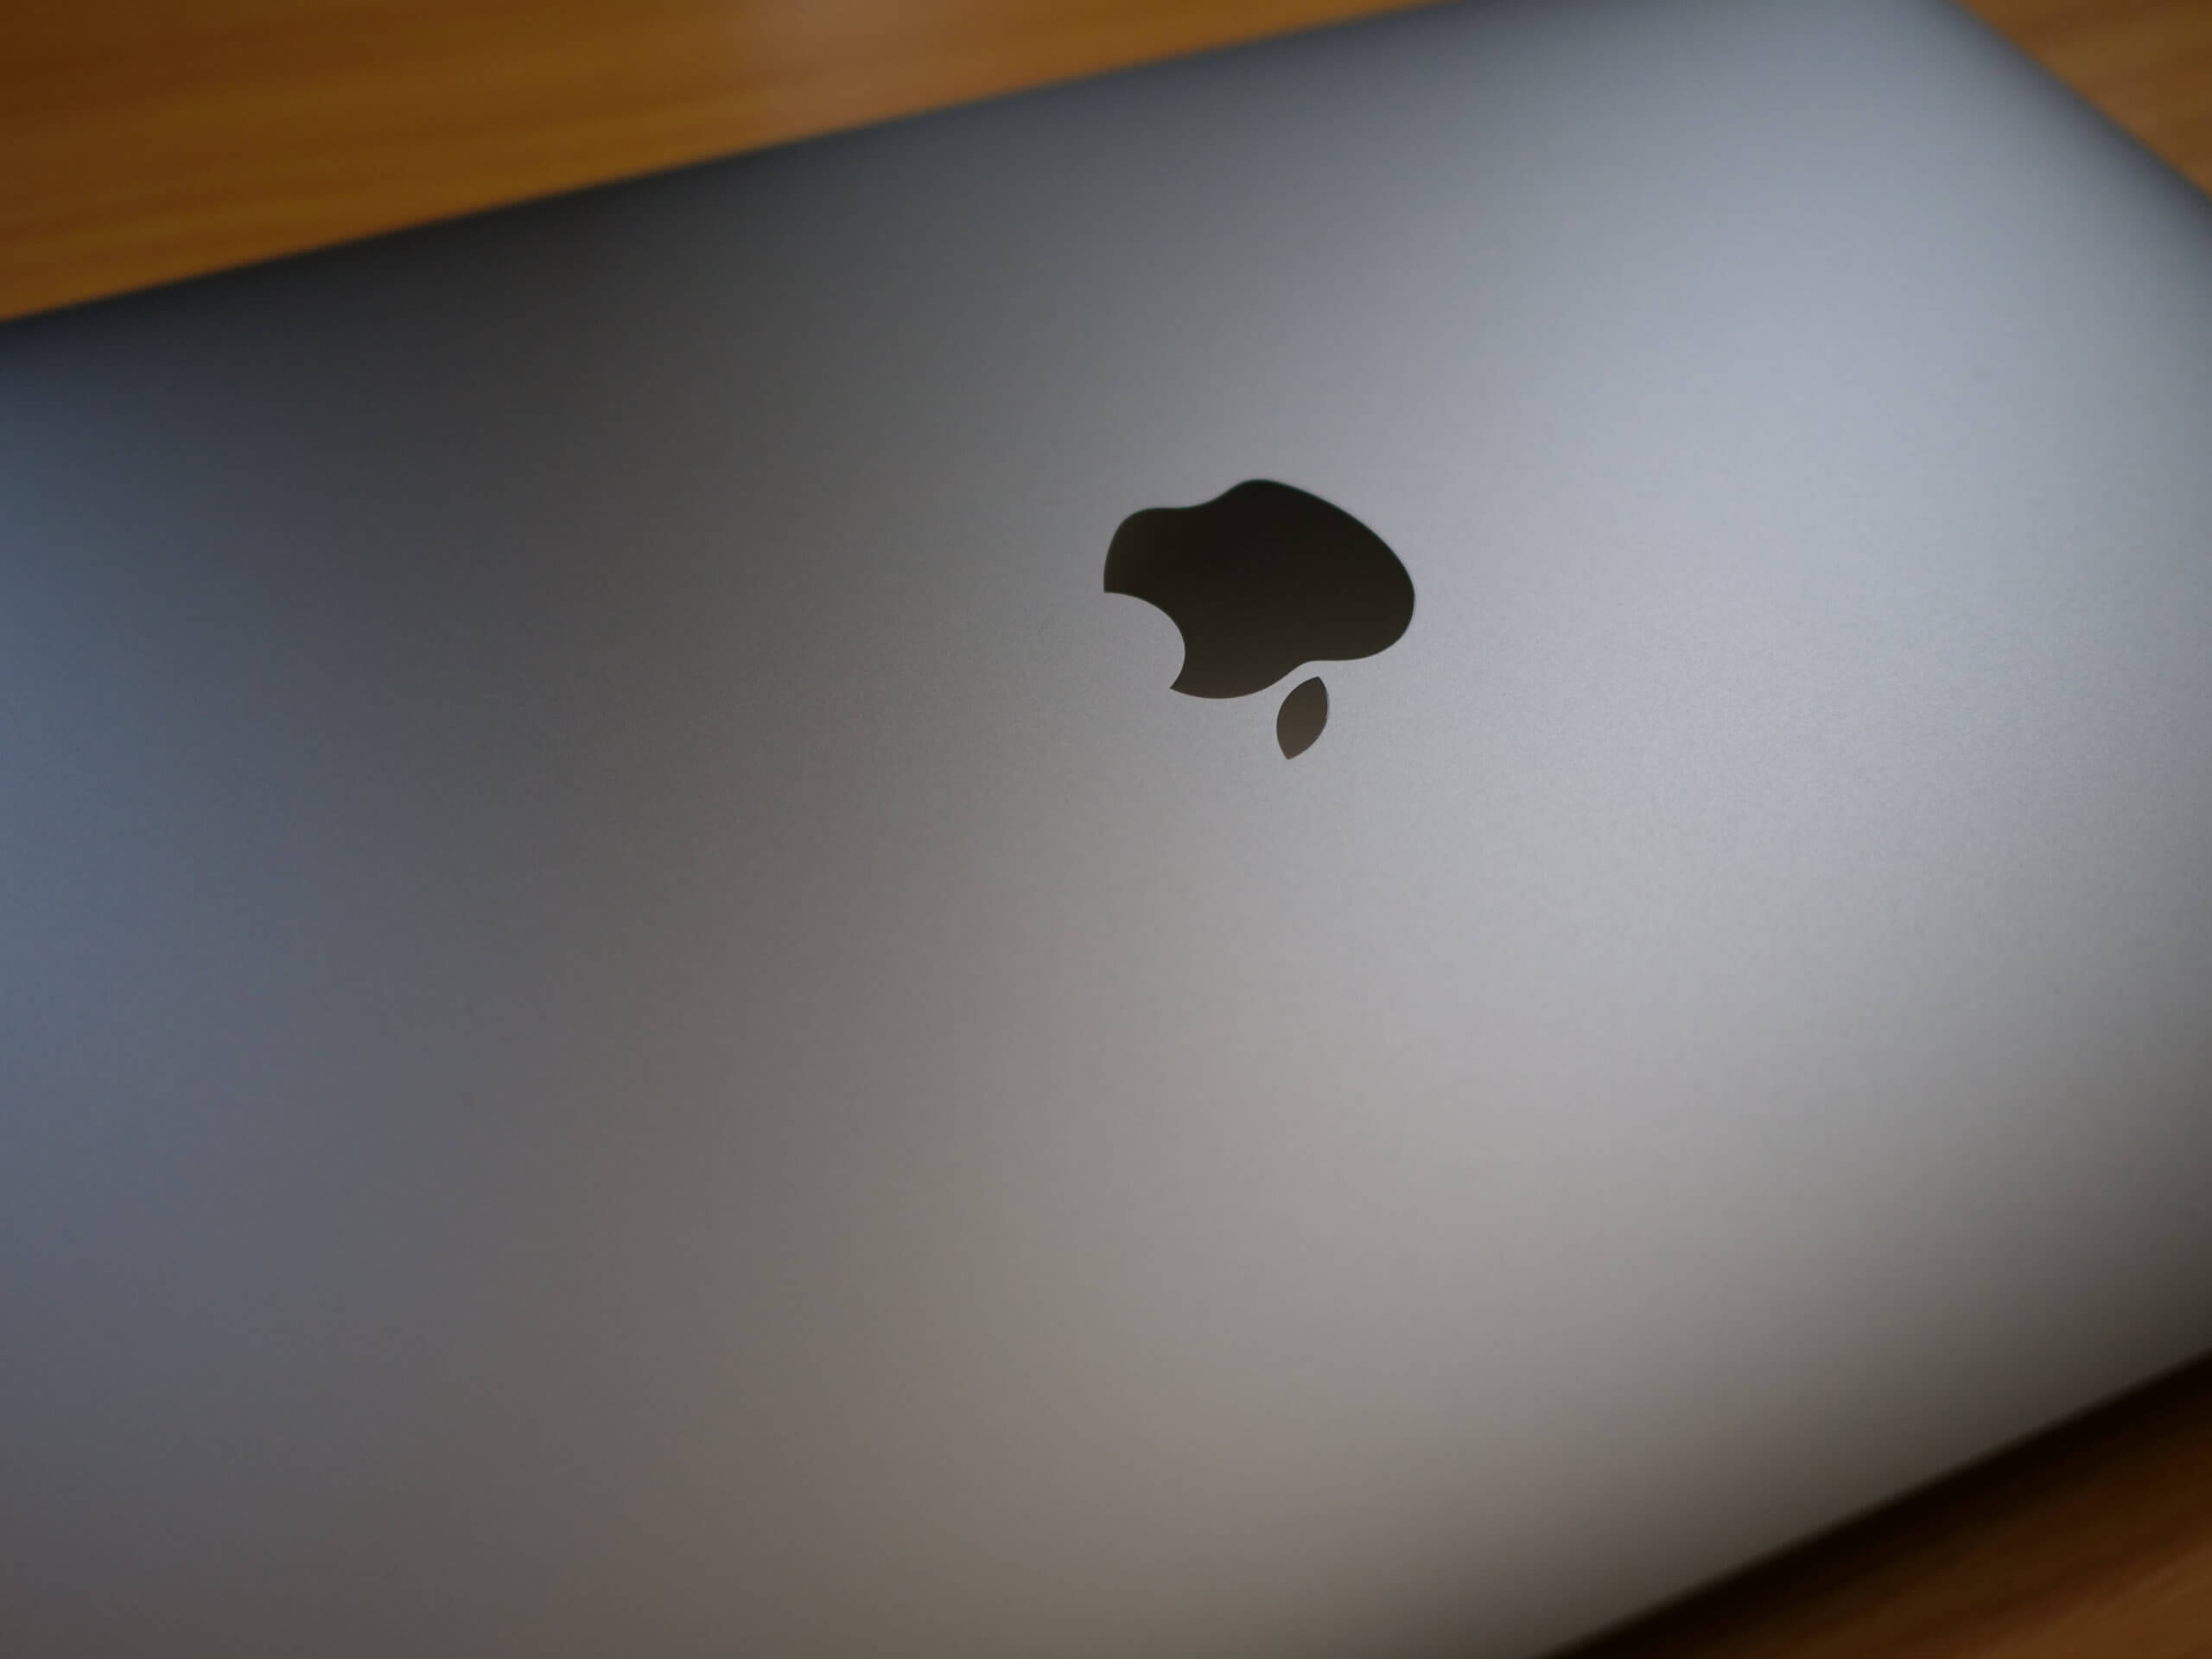 アップルシリコンM1搭載MacBook Pro下位・吊るしモデル レビュー 